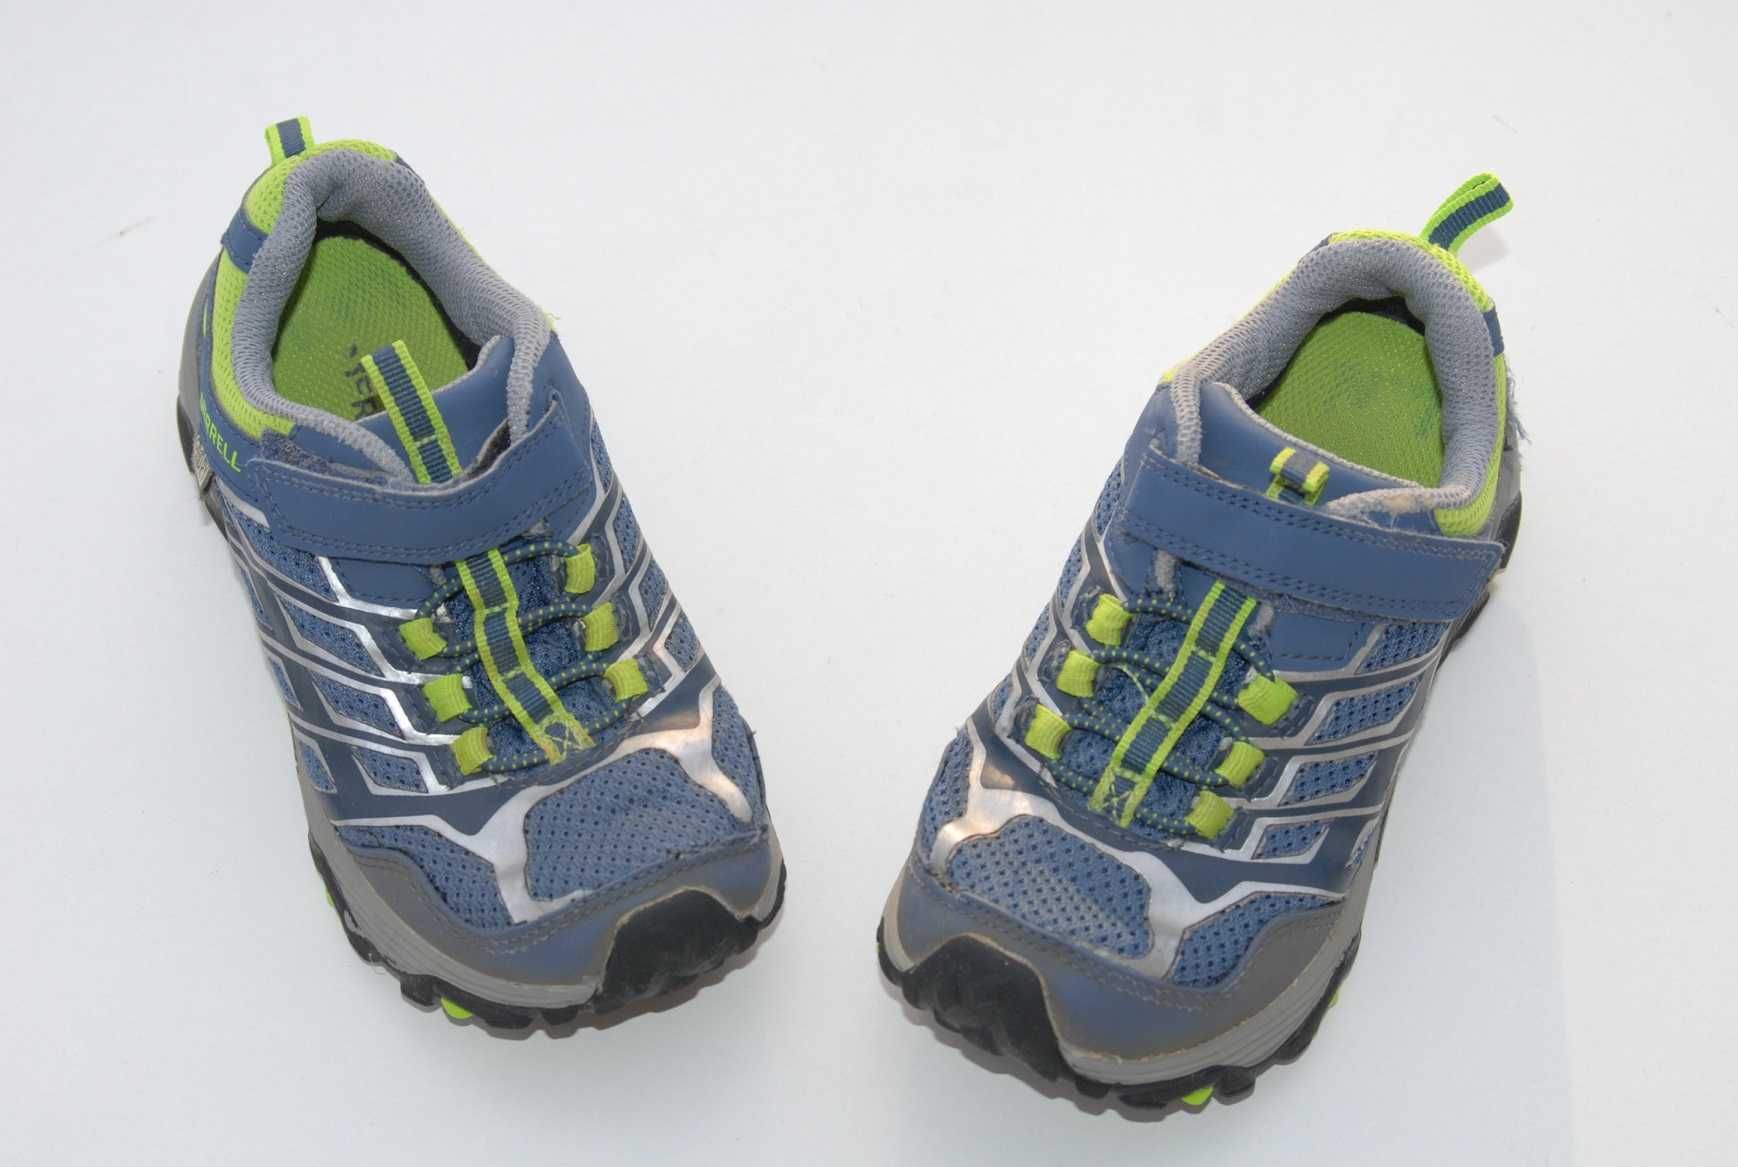 Buty trekkingowe Merrell młodzieżowe rozmiar 31 wkład. 20 cm